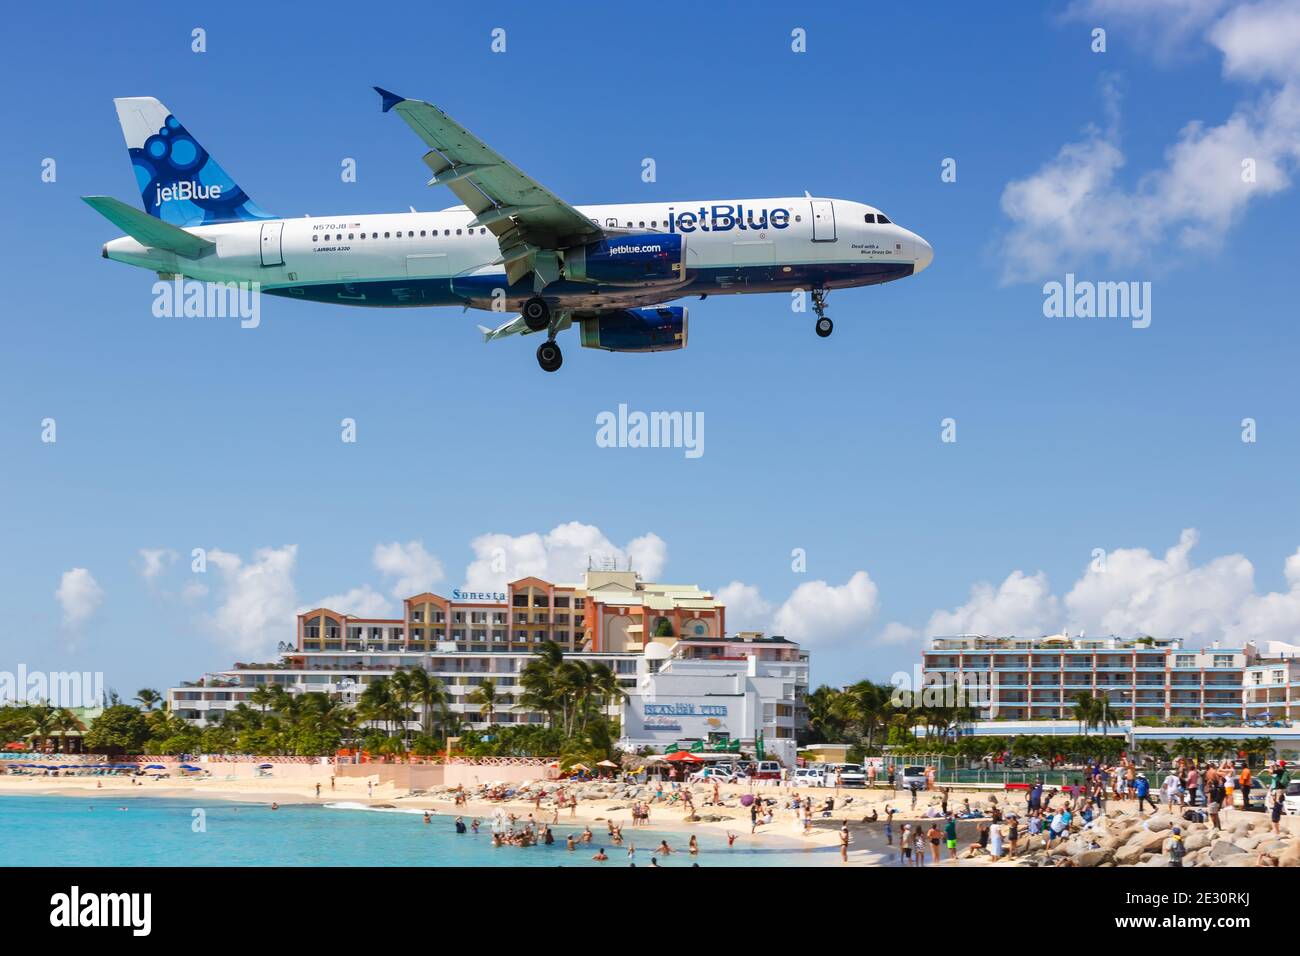 Sint Maarten, Netherlands Antilles - September 15, 2016: JetBlue Airbus A320 airplane at Sint Maarten Airport (SXM) in the Caribbean. Stock Photo